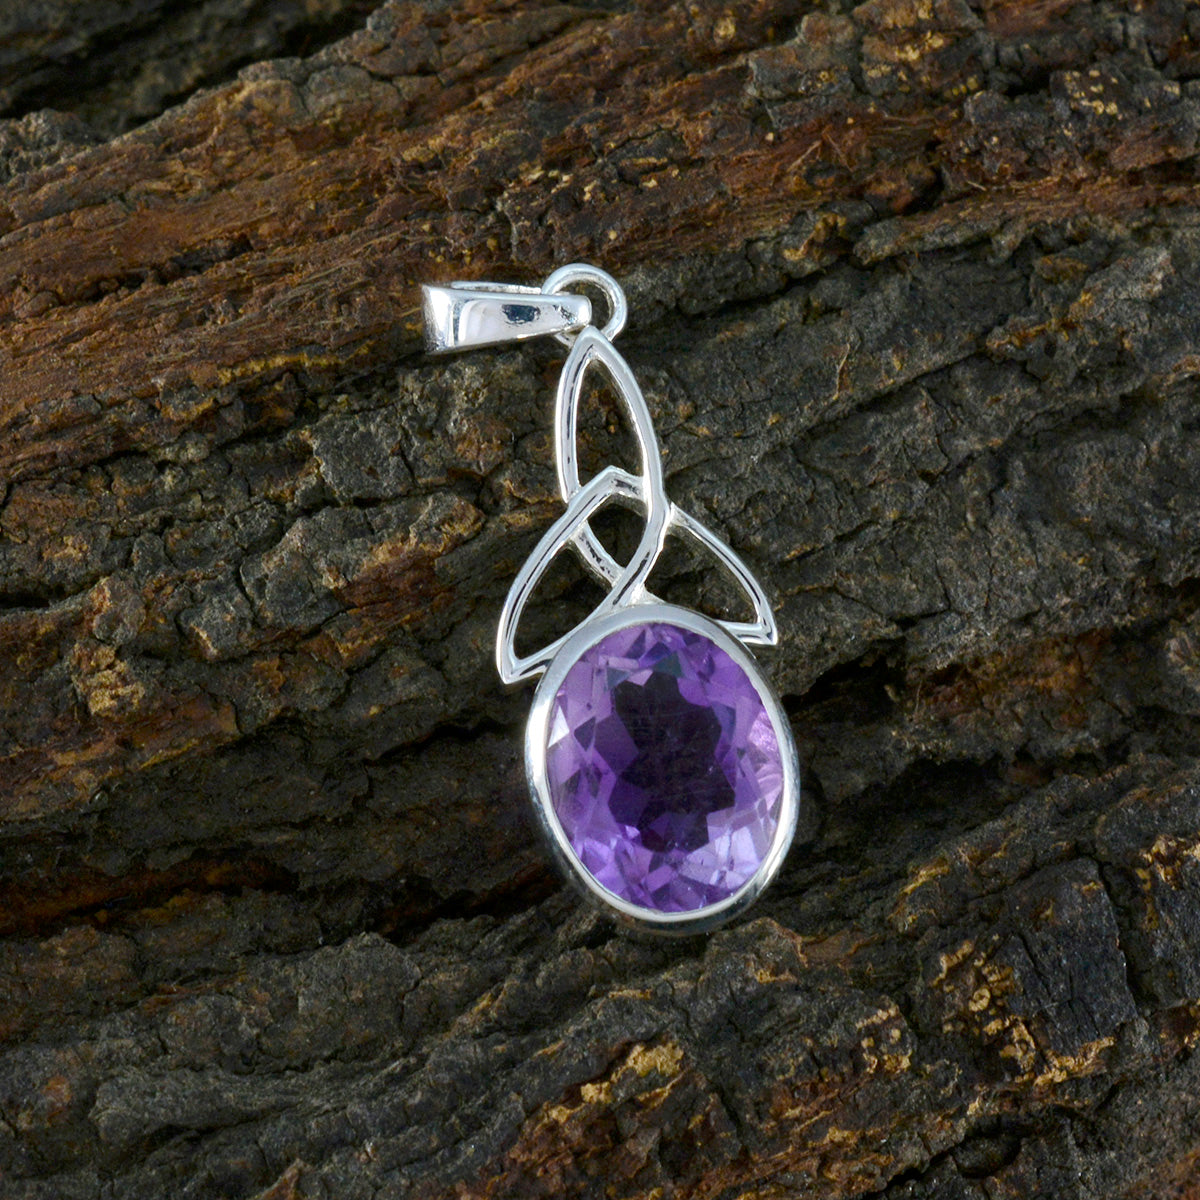 riyo foxy pierre précieuse ovale à facettes améthyste violette 982 pendentif en argent sterling cadeau pour le vendredi saint